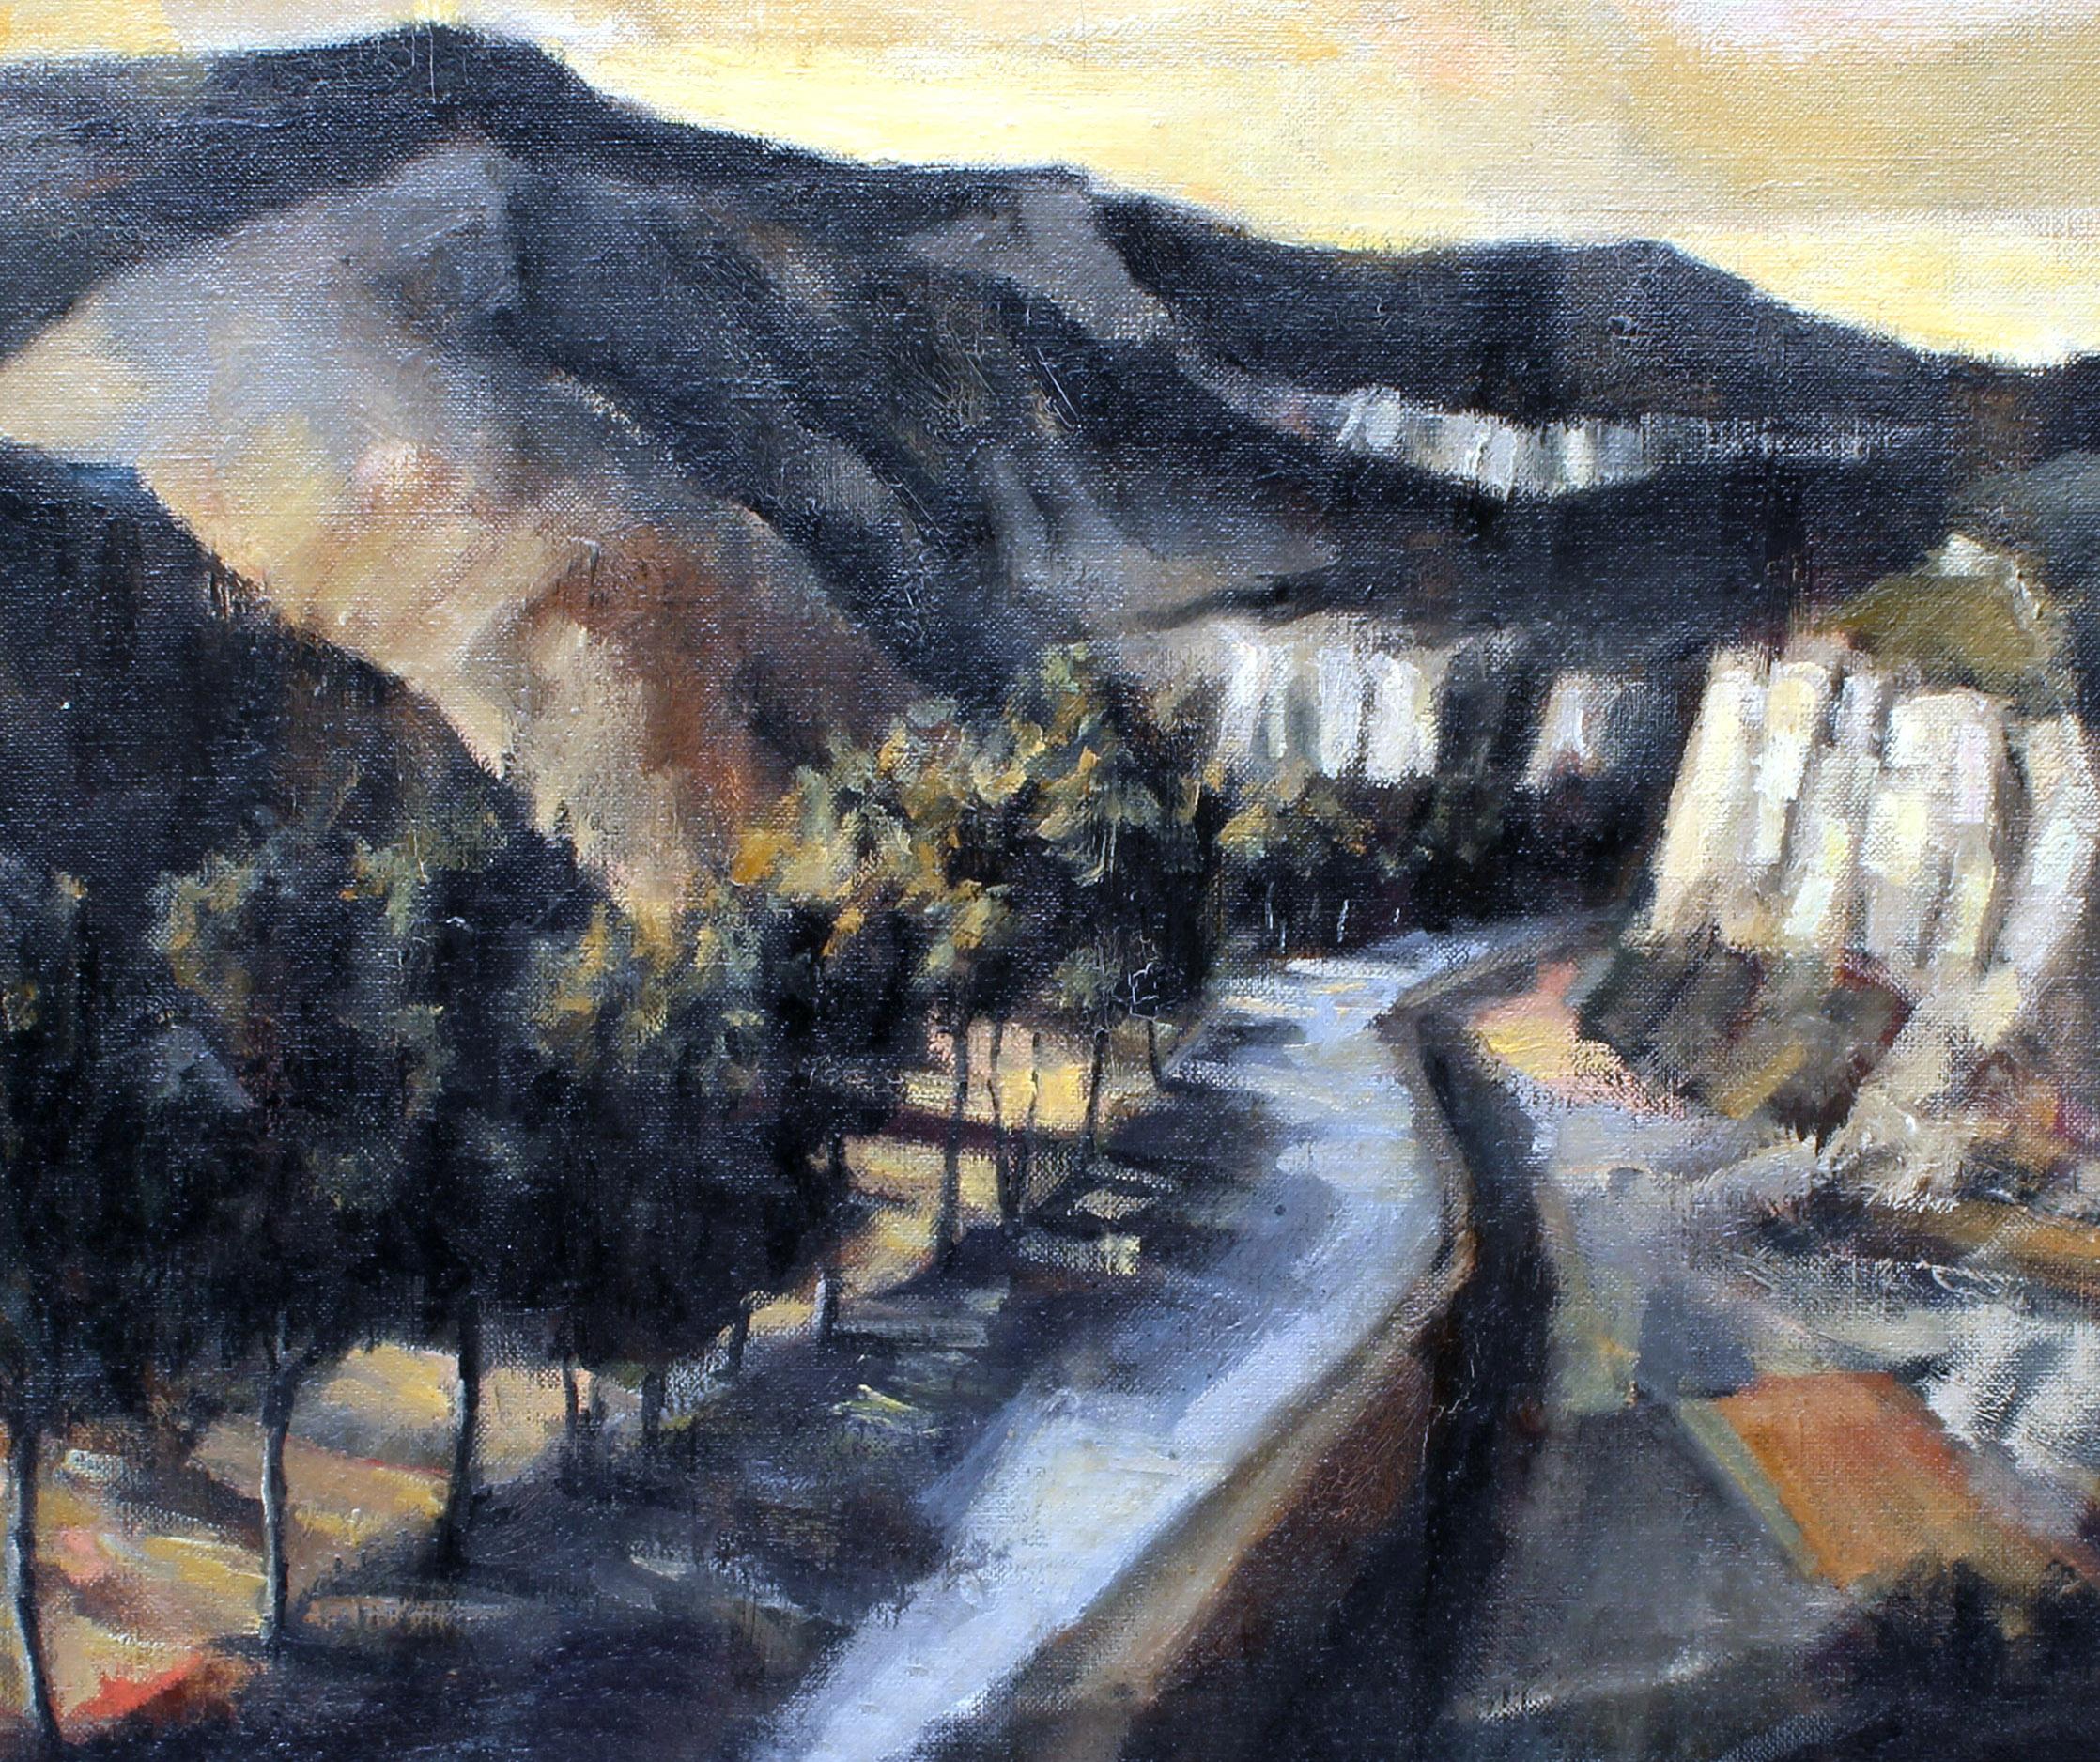 Modernistisches modernistisches amerikanisches Landschaftsgemälde 1950 Berg Schatten Selten gerahmt Tranquil (Amerikanische Moderne), Painting, von Francis Kelly